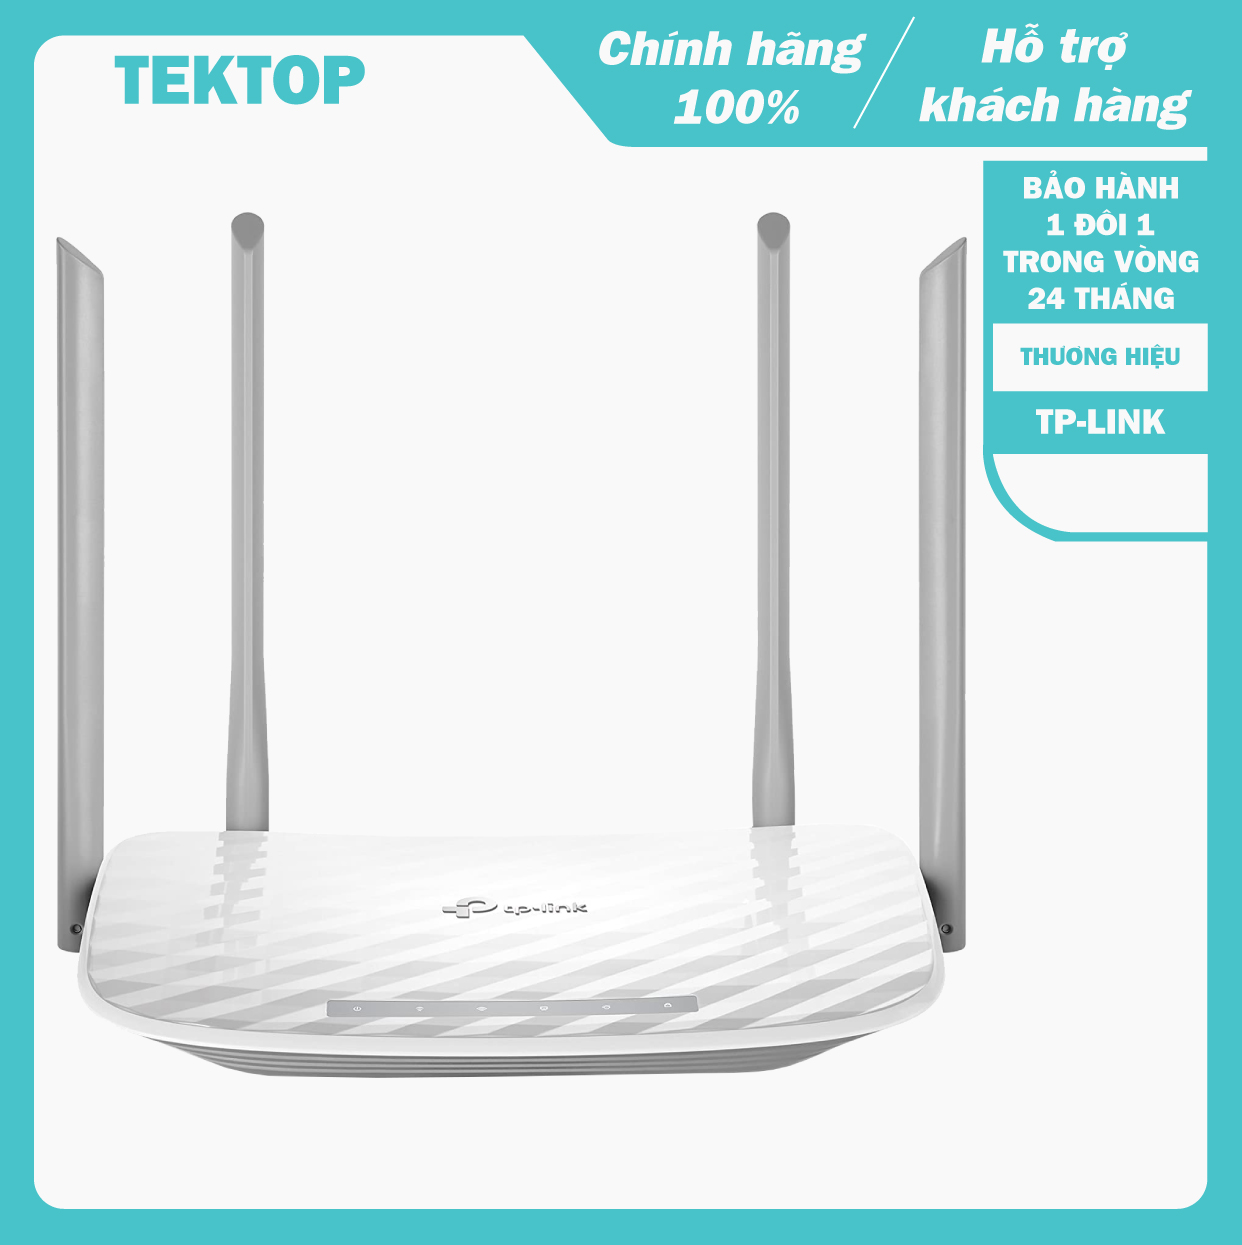 (BẢO HÀNH CHÍNH HÃNG 1 ĐỔI 1 TRONG VÒNG 2 NĂM) Bộ phát wifi băng tần kép TP-Link Archer C50 dành cho gia đình,  tốc độ nhanh gấp 3 lần so với chuẩn N